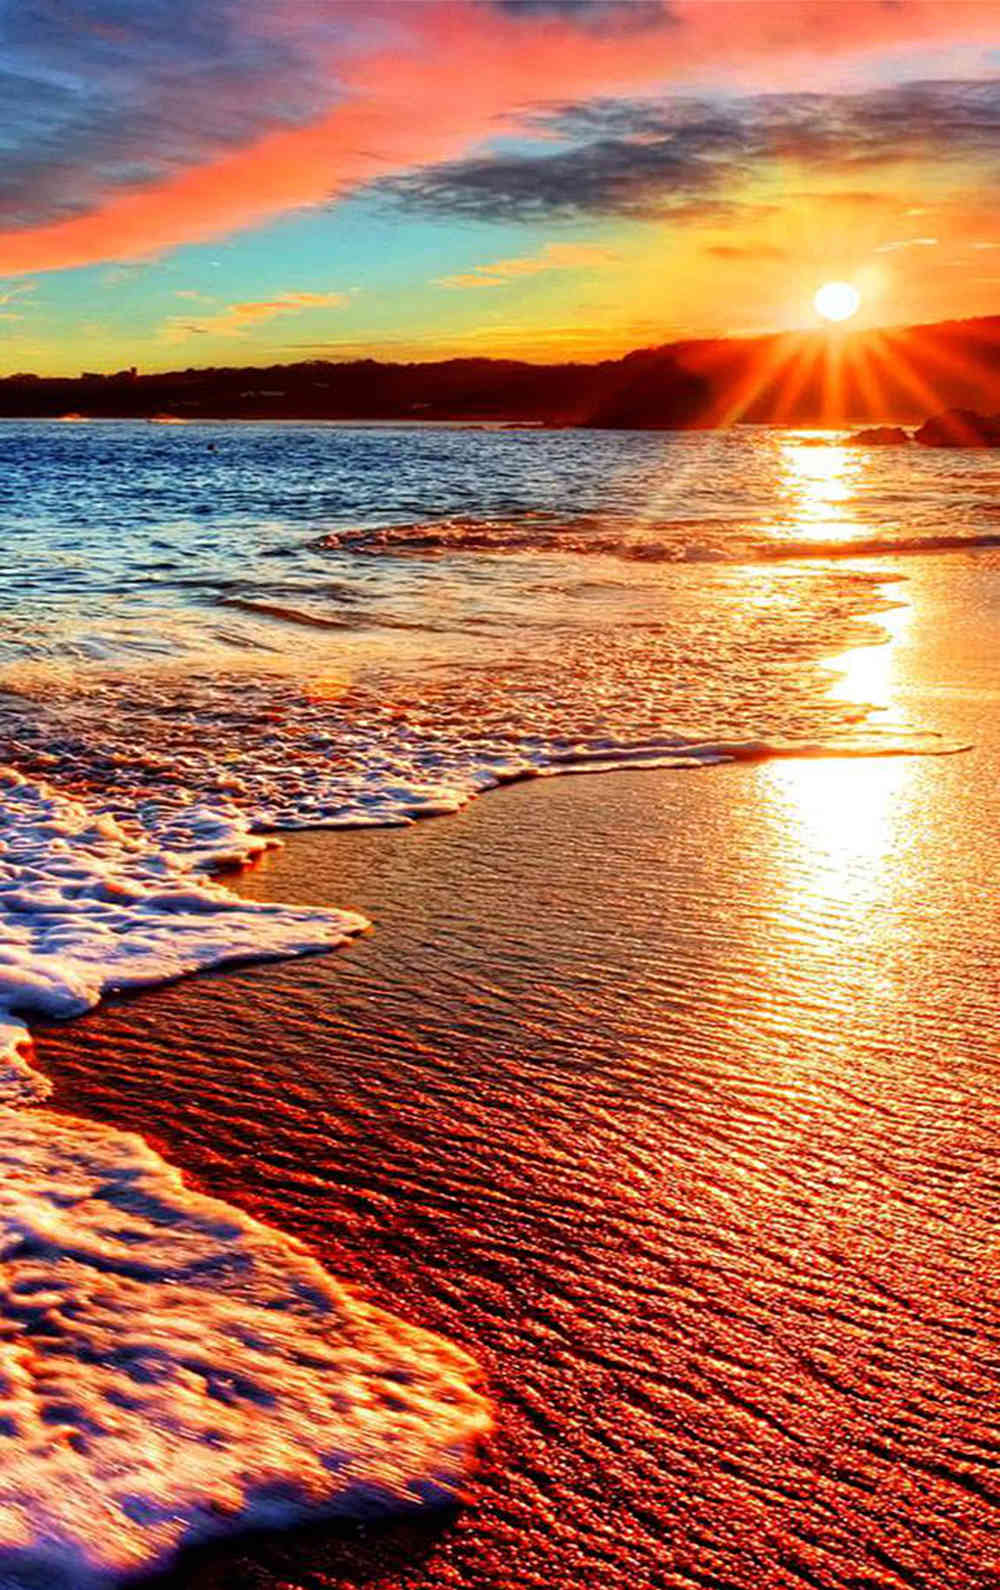 夕阳西下的颜色,渲染了整个海滩,就连海浪和沙滩都变成迷人的橙色